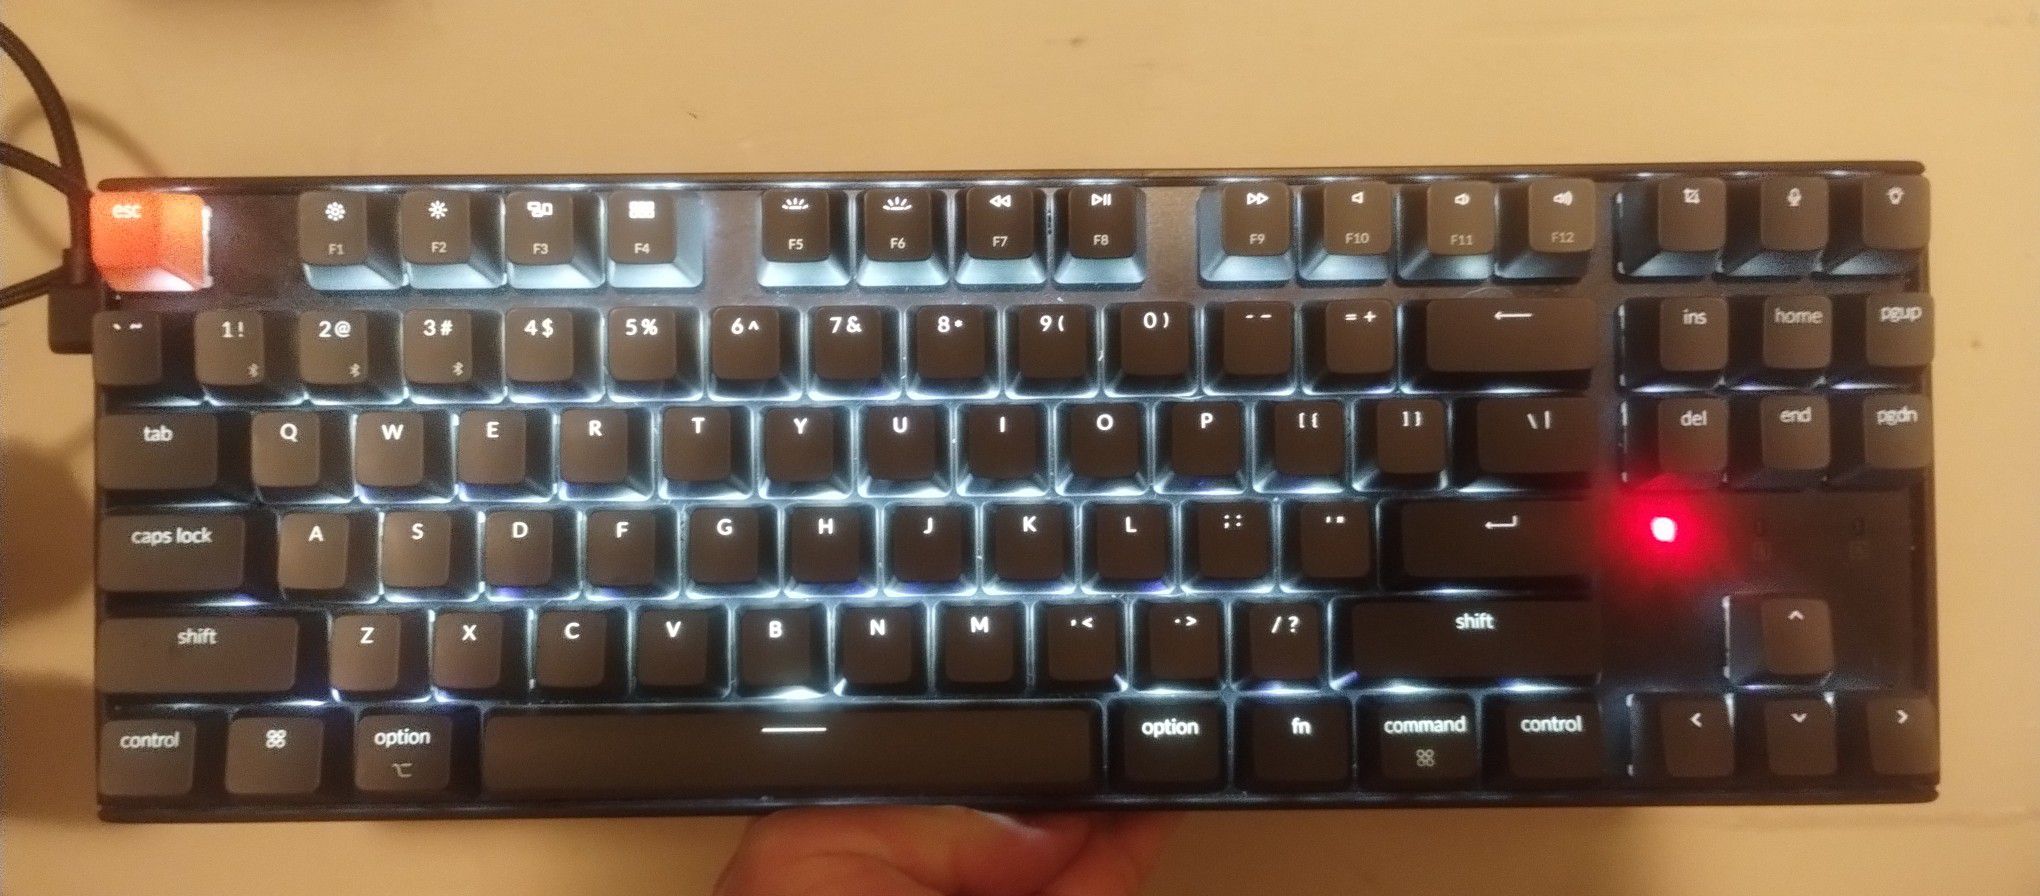 Keychron K8 Wireless Keyboard